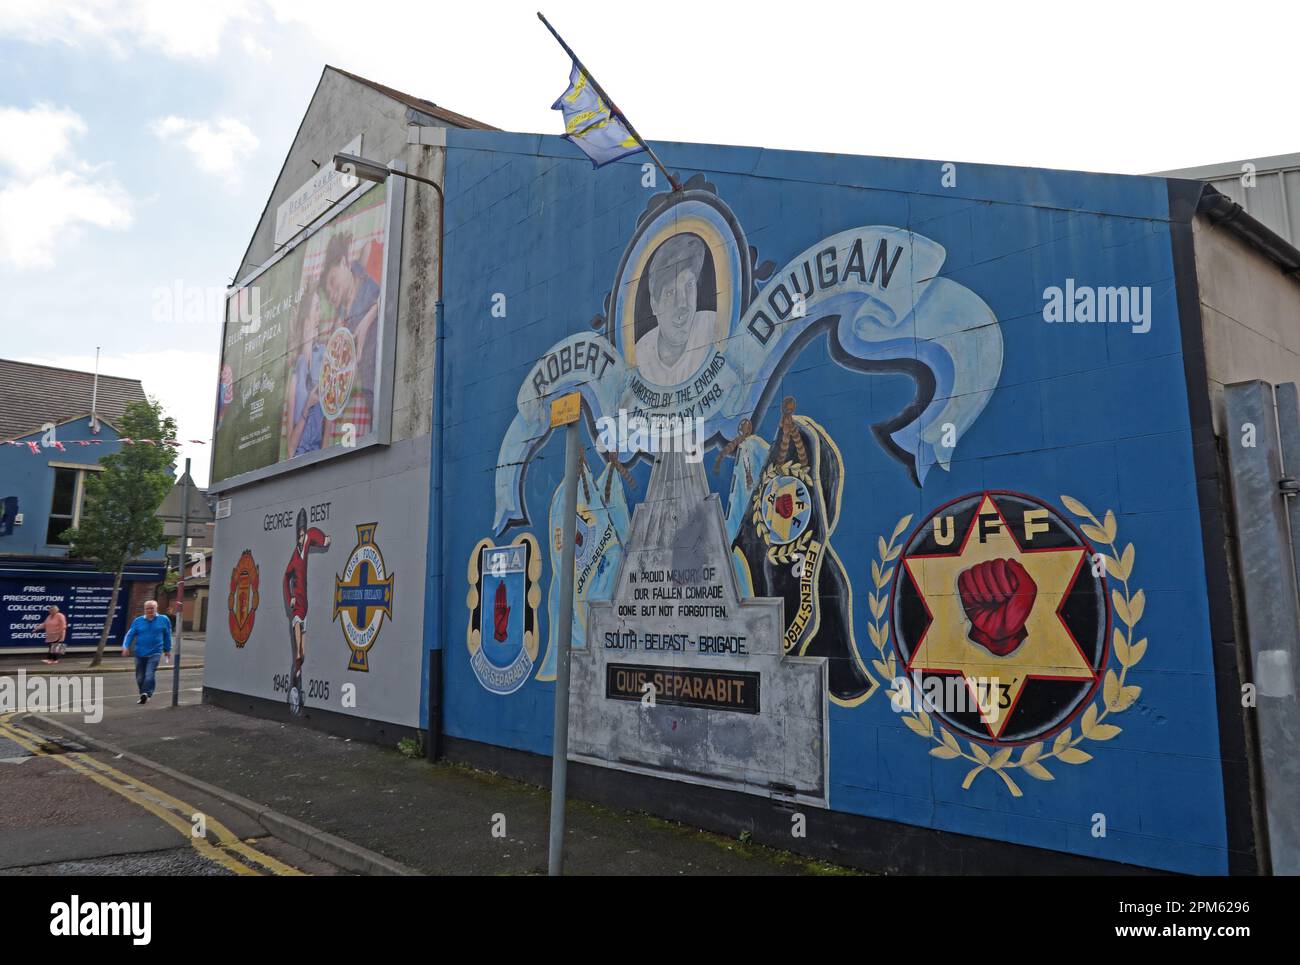 Memoriale murale a Robert Dougan, assassinato il 10th febbraio 1998, UDA, Blythe Street, Sandy Row, Belfast, Irlanda del Nord, Regno Unito, BT12 5EY Foto Stock